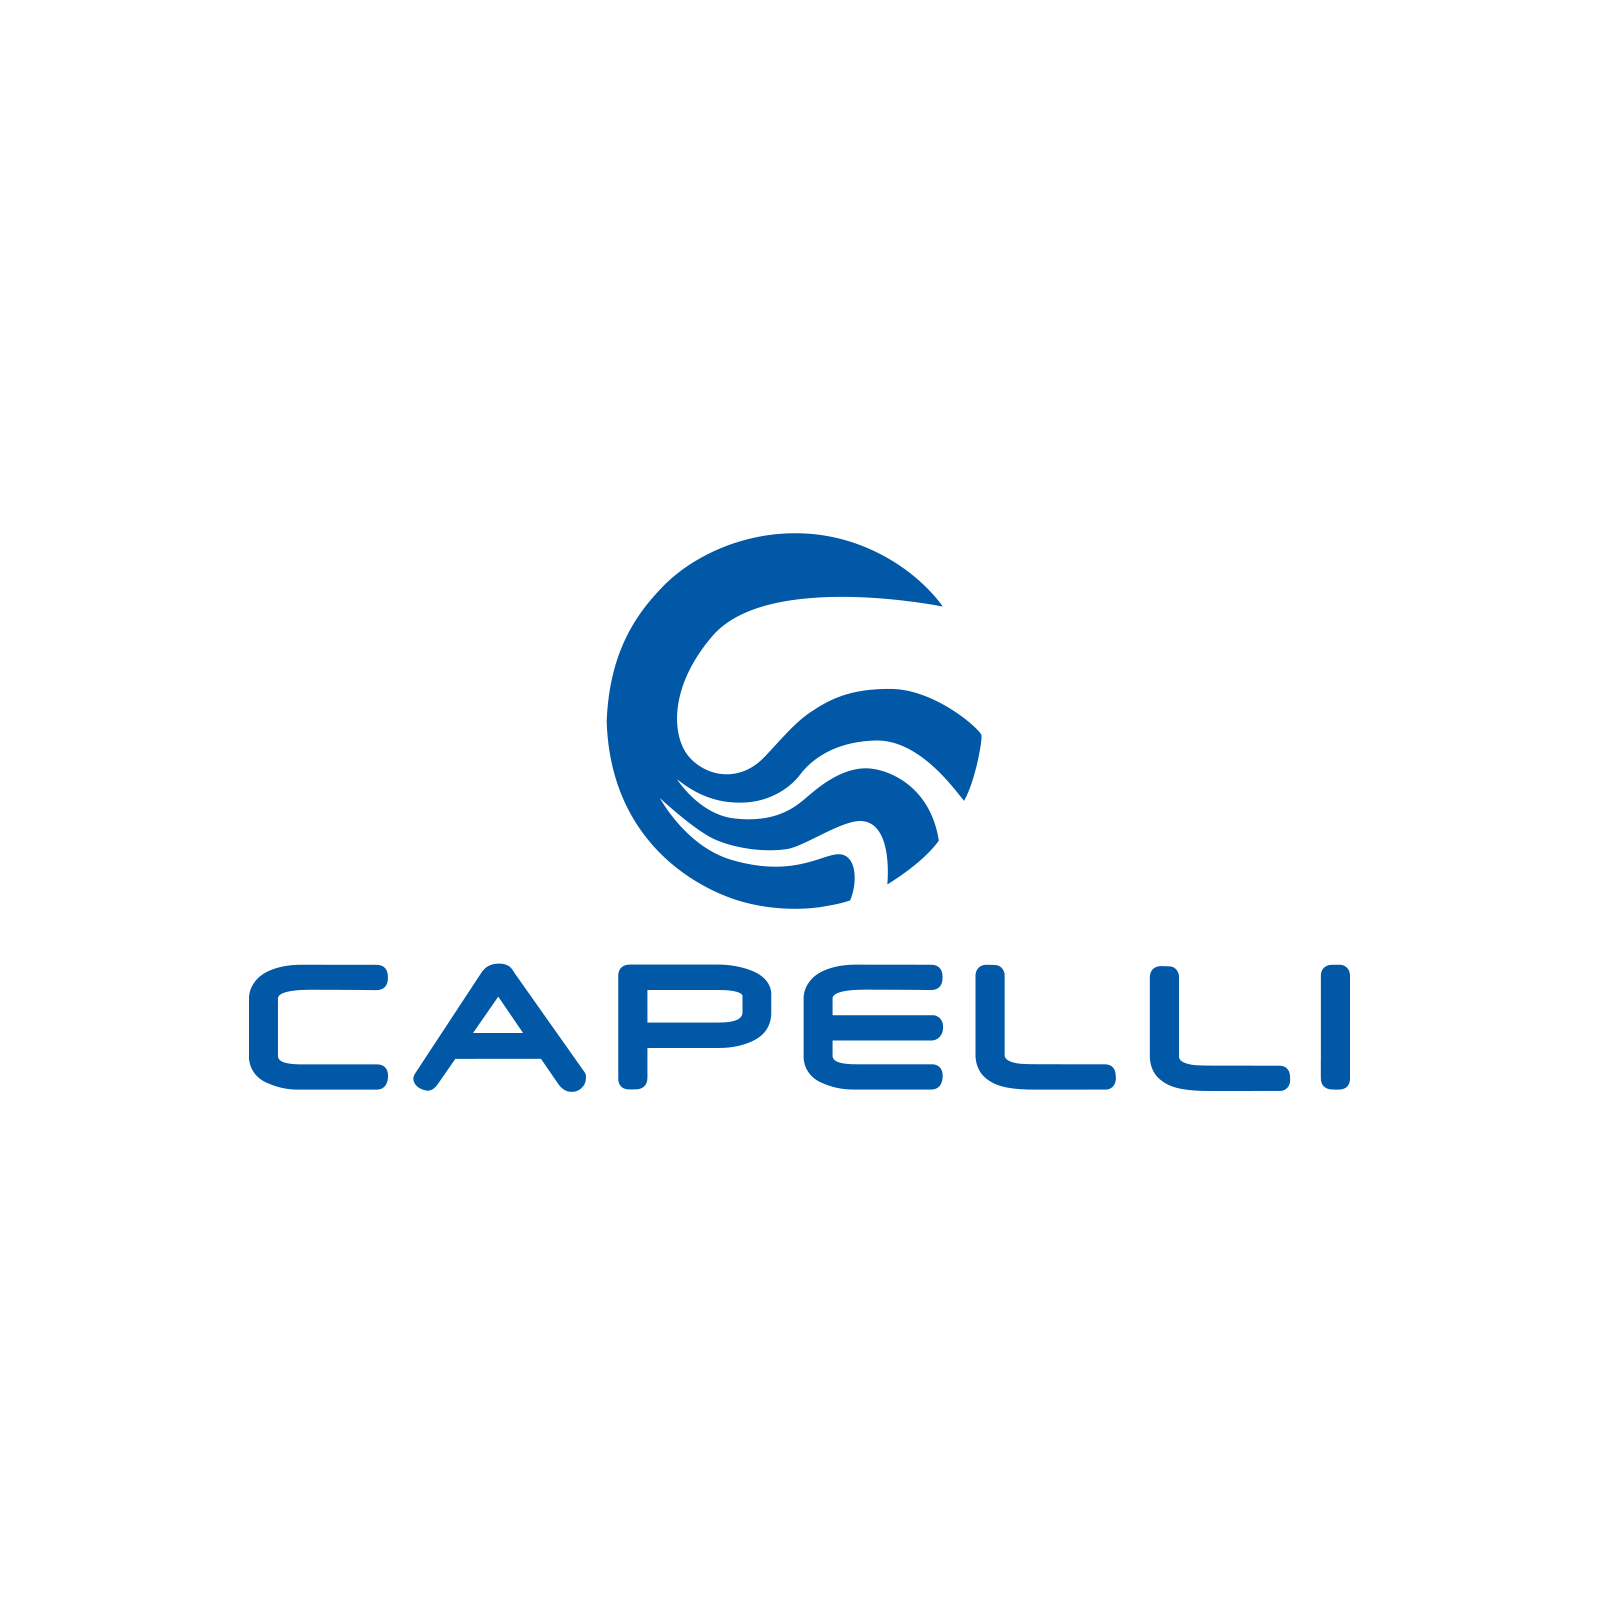 Capelli_logo.png